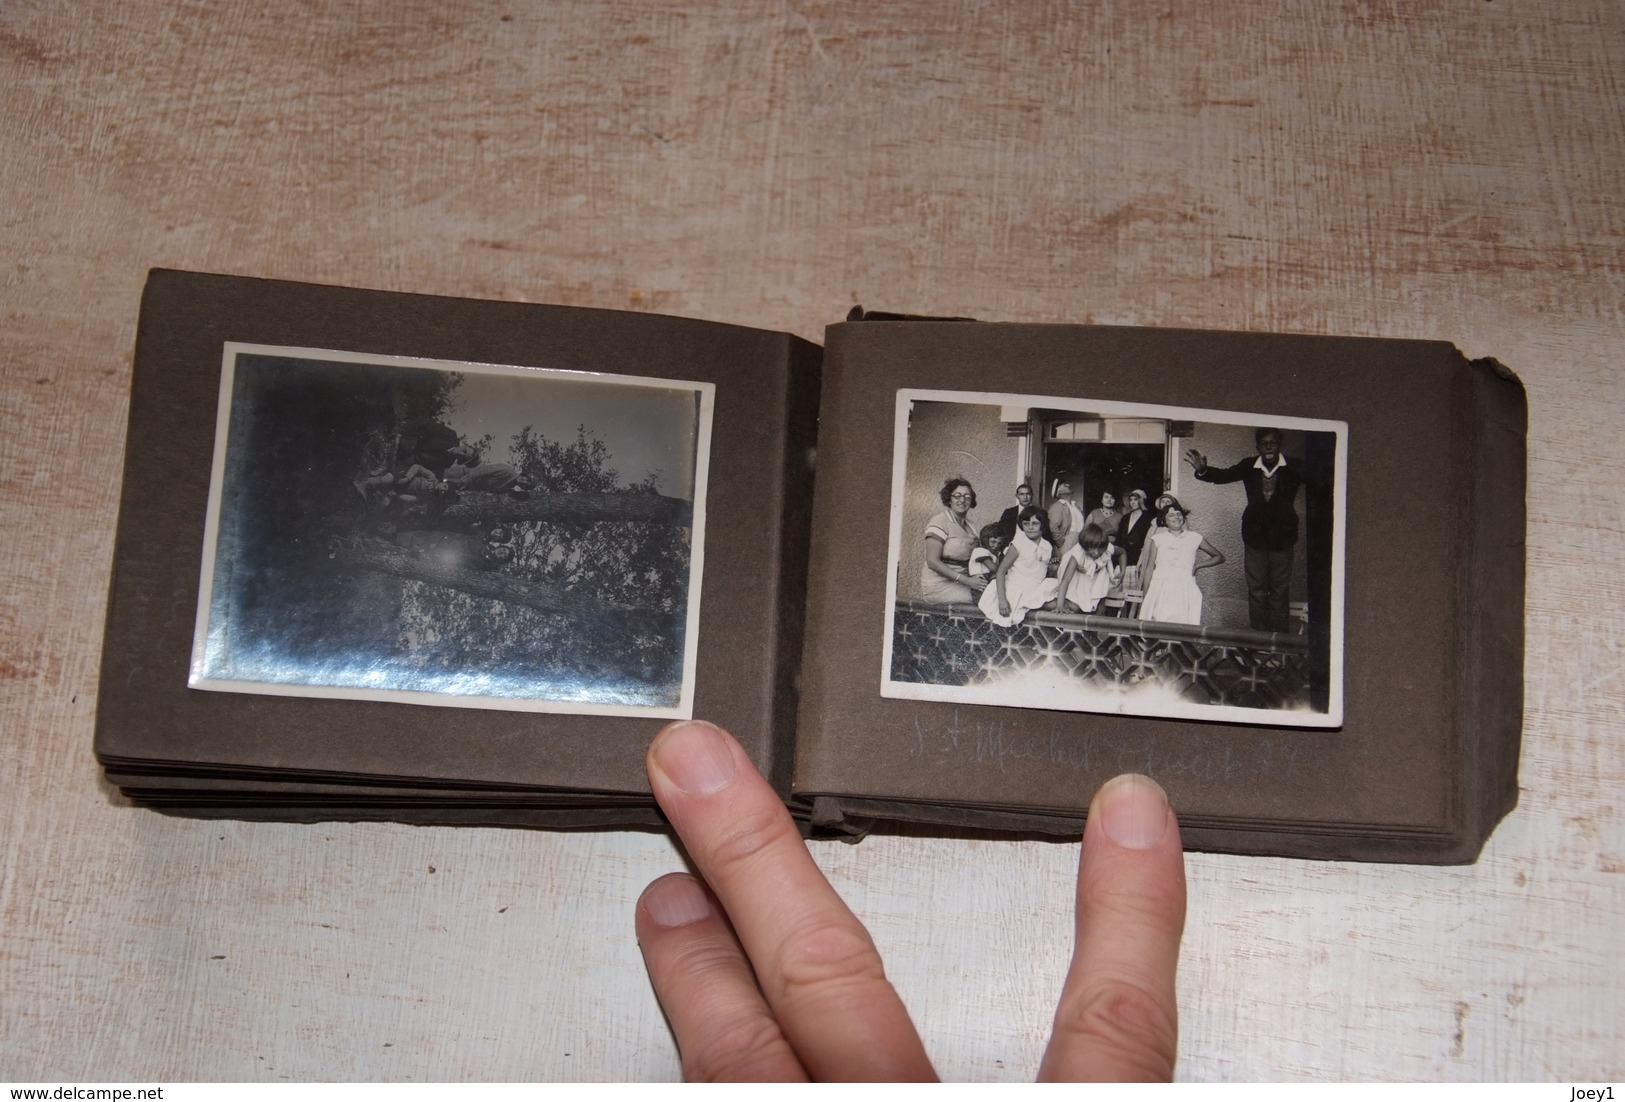 Un album photo format 10/15 année 1931,41 photos légendées et datées.